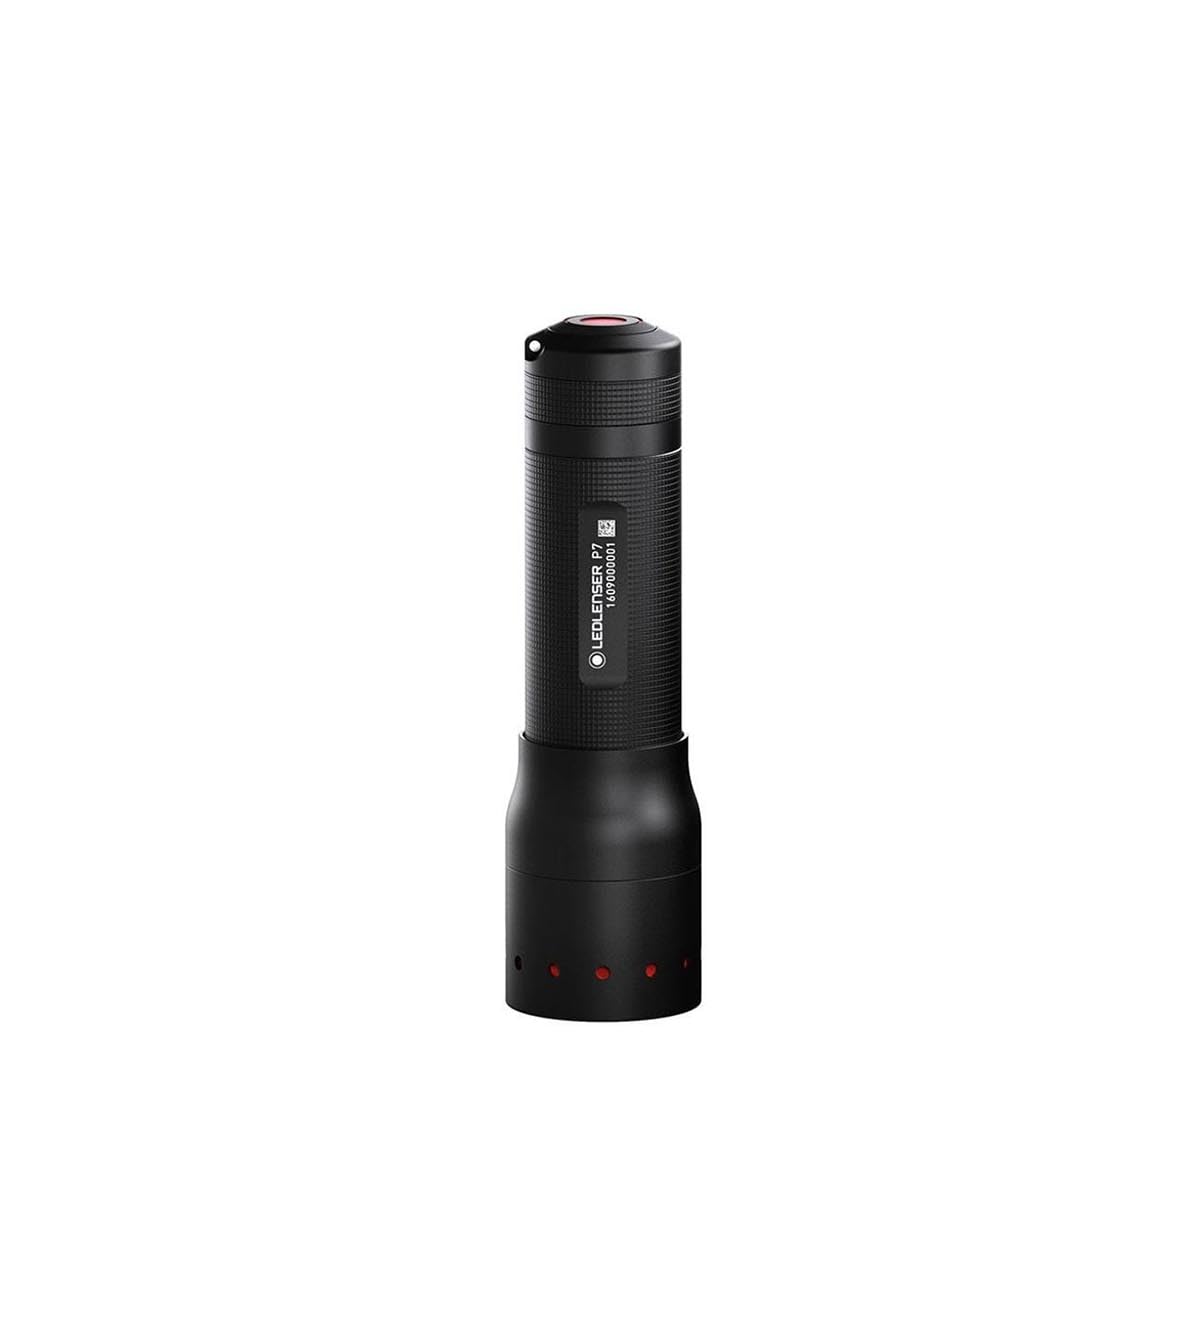 Ledlenser 501046 P7 Professionelle LED-Taschenlampe, schwarz. Auf 450 Lumen aufgerüstet, Hochleistung, Kompakt, Leistungsstark, 1,5 V, 13 x 3,7 x 13 cm von Ledlenser